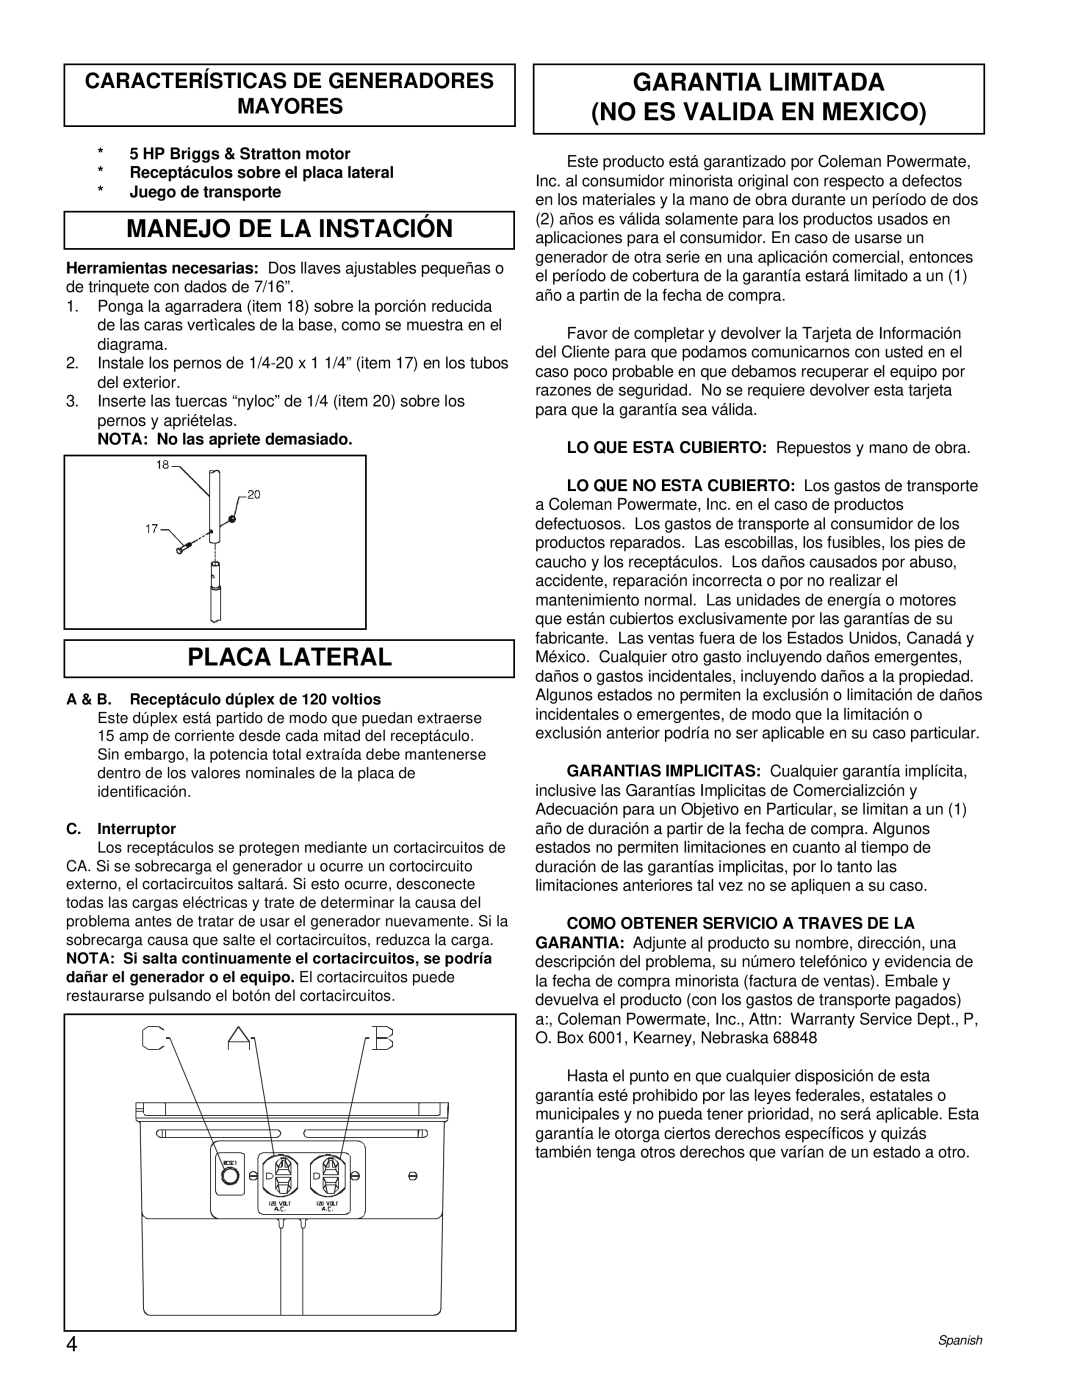 Briggs & Stratton PM0422505.02 manual Manejo De La Instación, Placa Lateral, Garantia Limitada No Es Valida En Mexico 